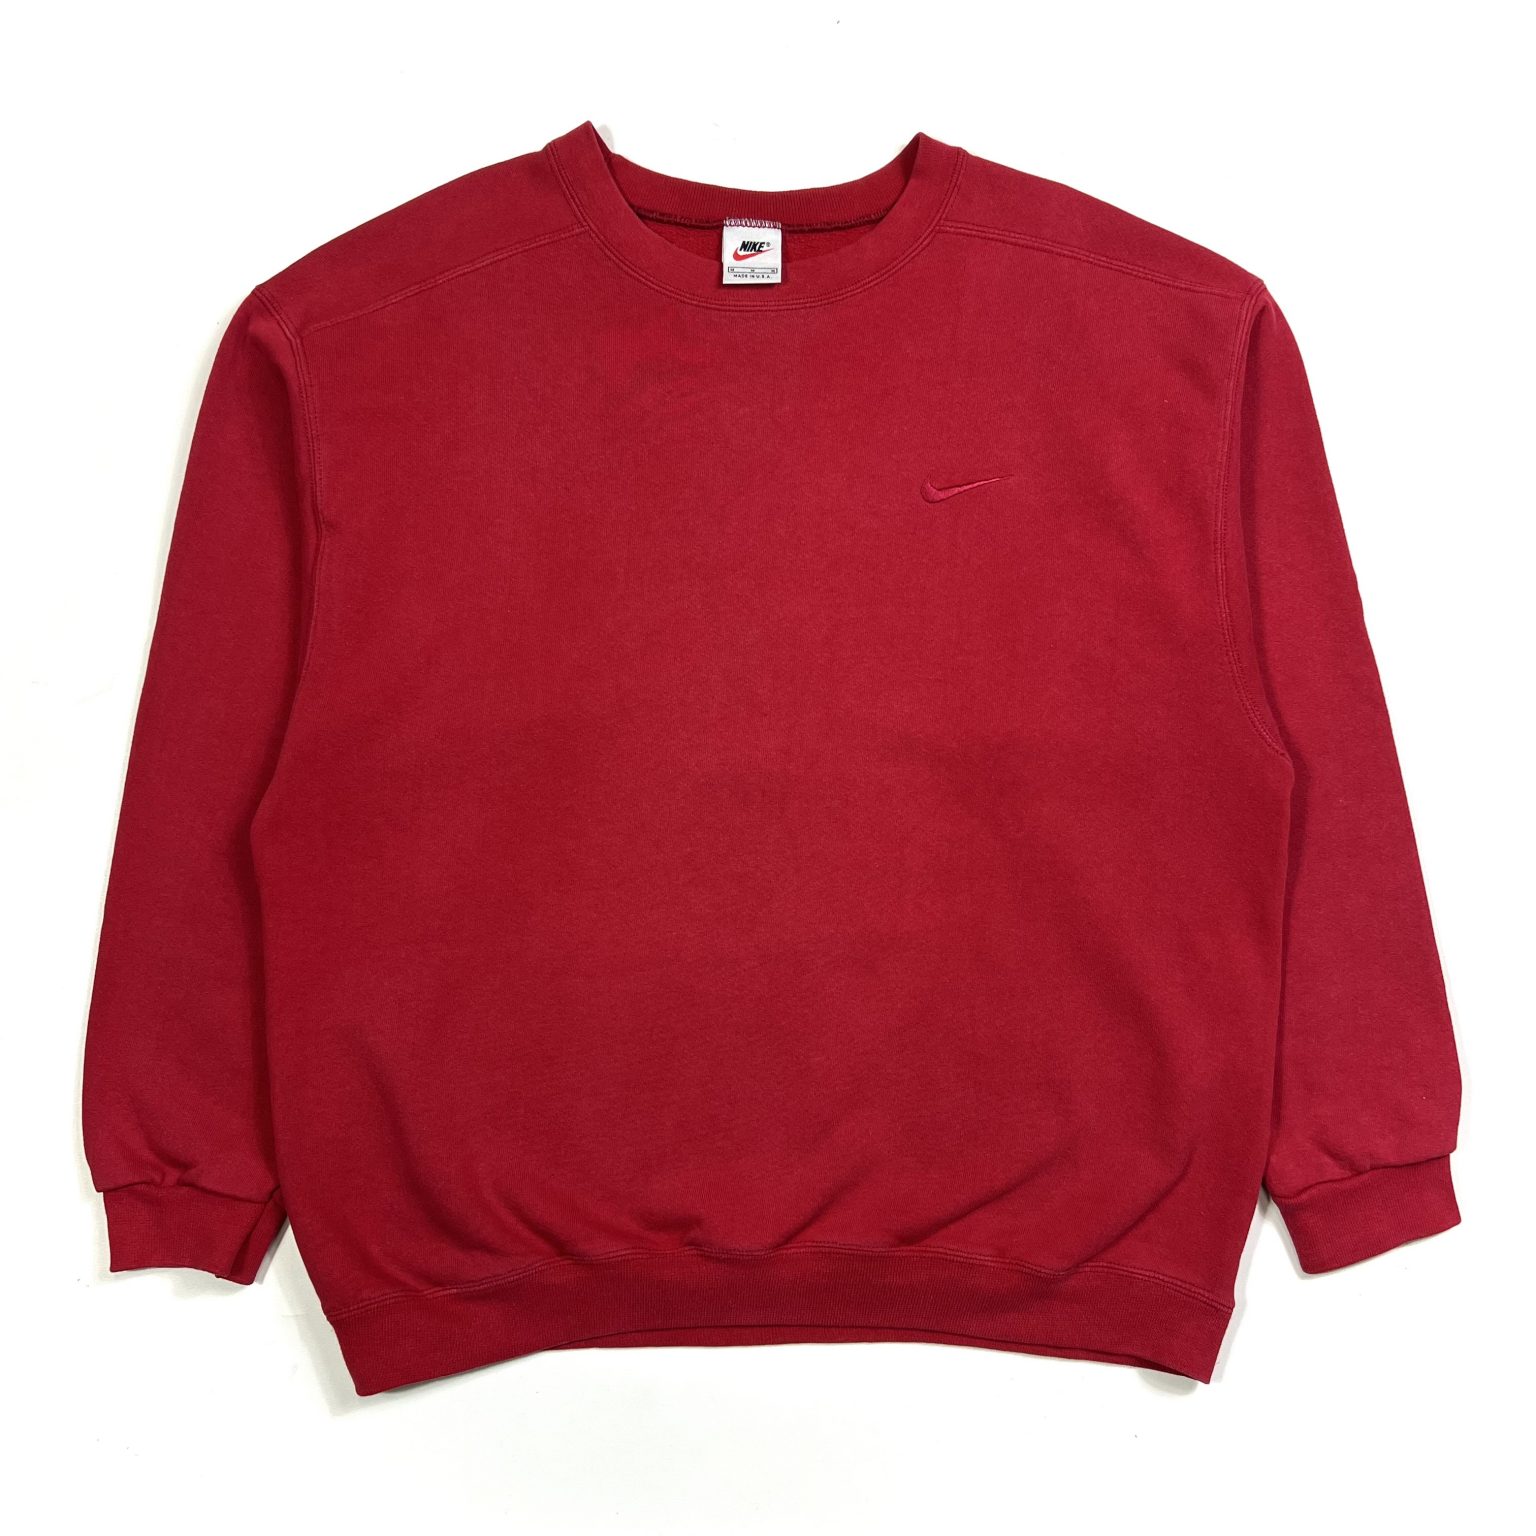 Vintage Sweatshirts - TMC Vintage Clothing